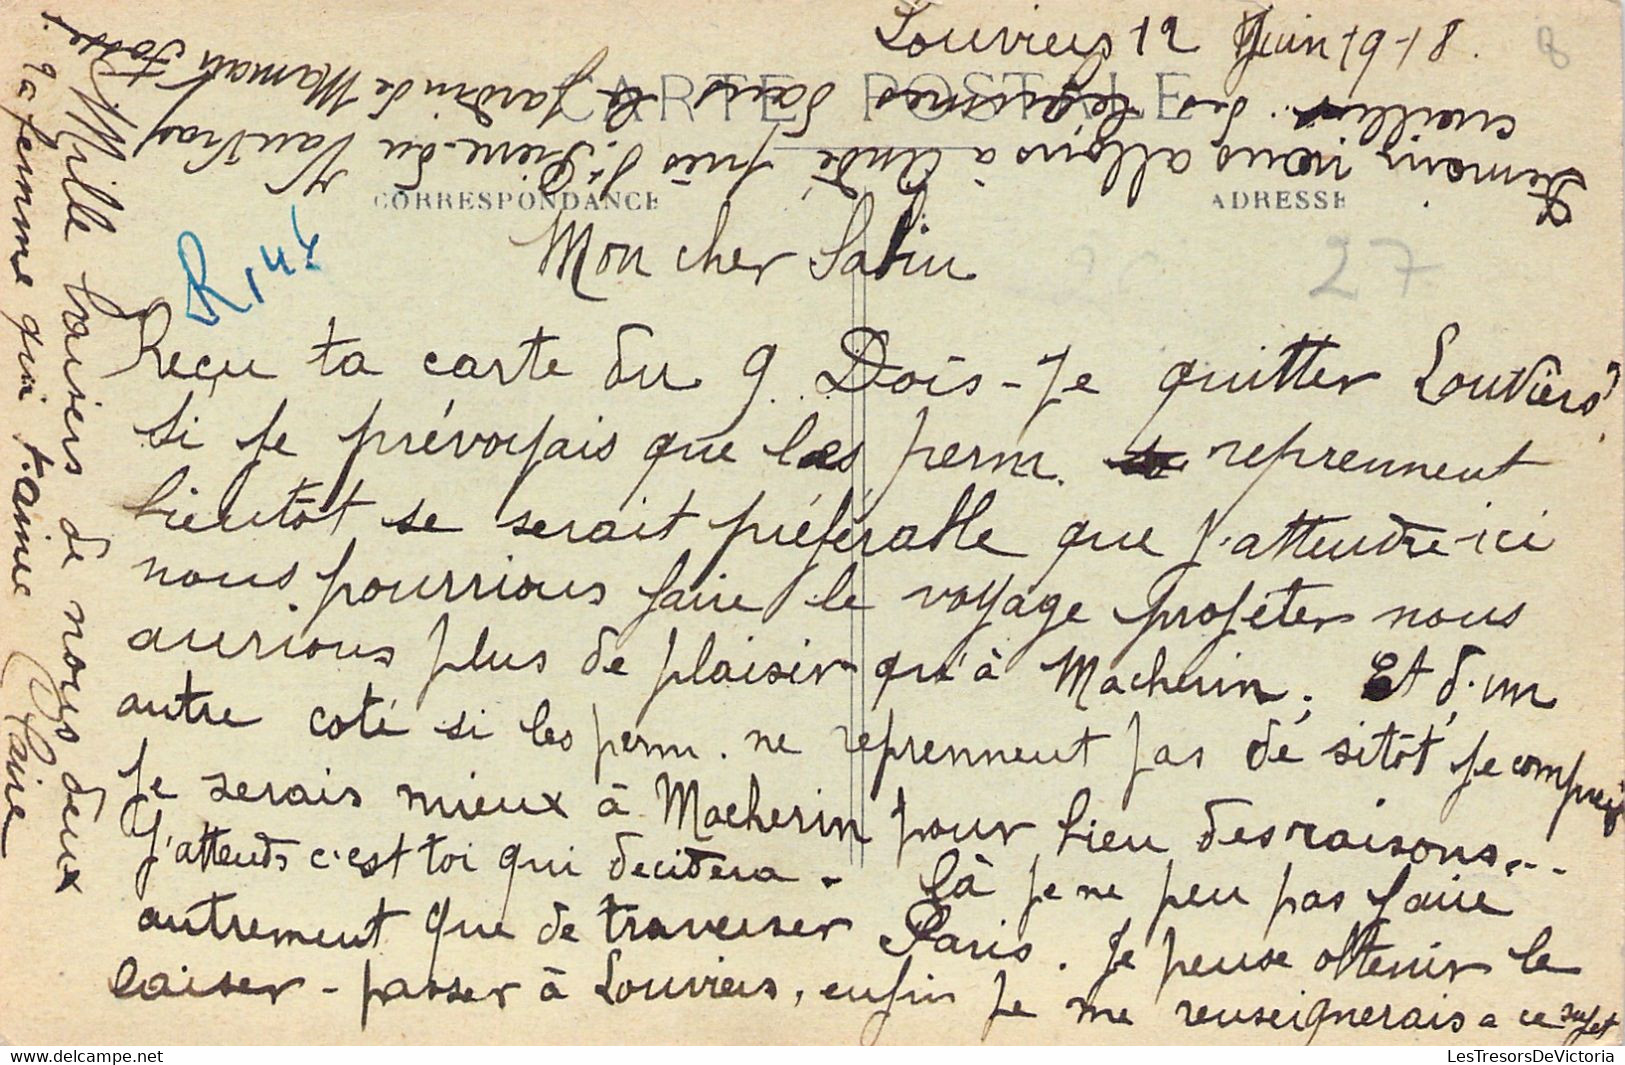 LOUVIERS - Rue Grande - Animé - Correspondance De Juin 1918 - Bozonet Divers Magasins - Louviers